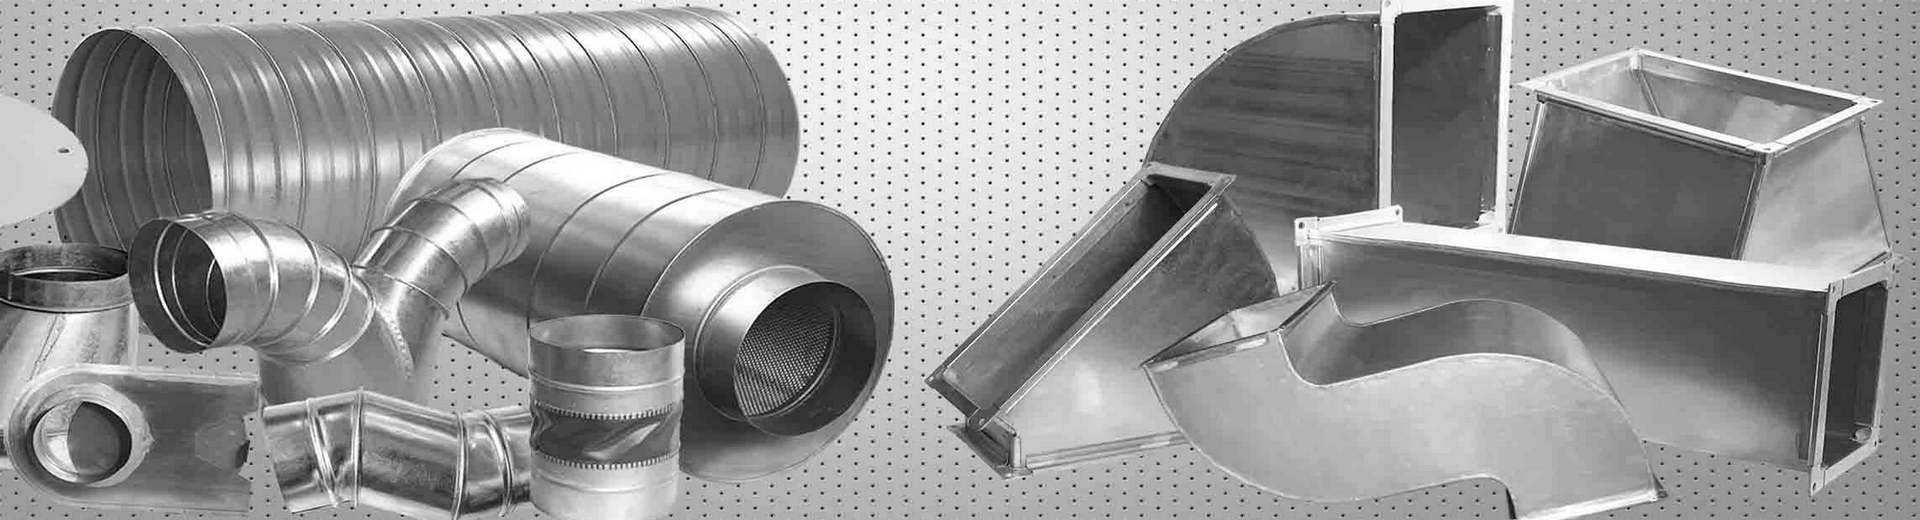 Как выбрать воздуховоды из оцинкованной стали: размеры, диаметры, госты и правила монтажа